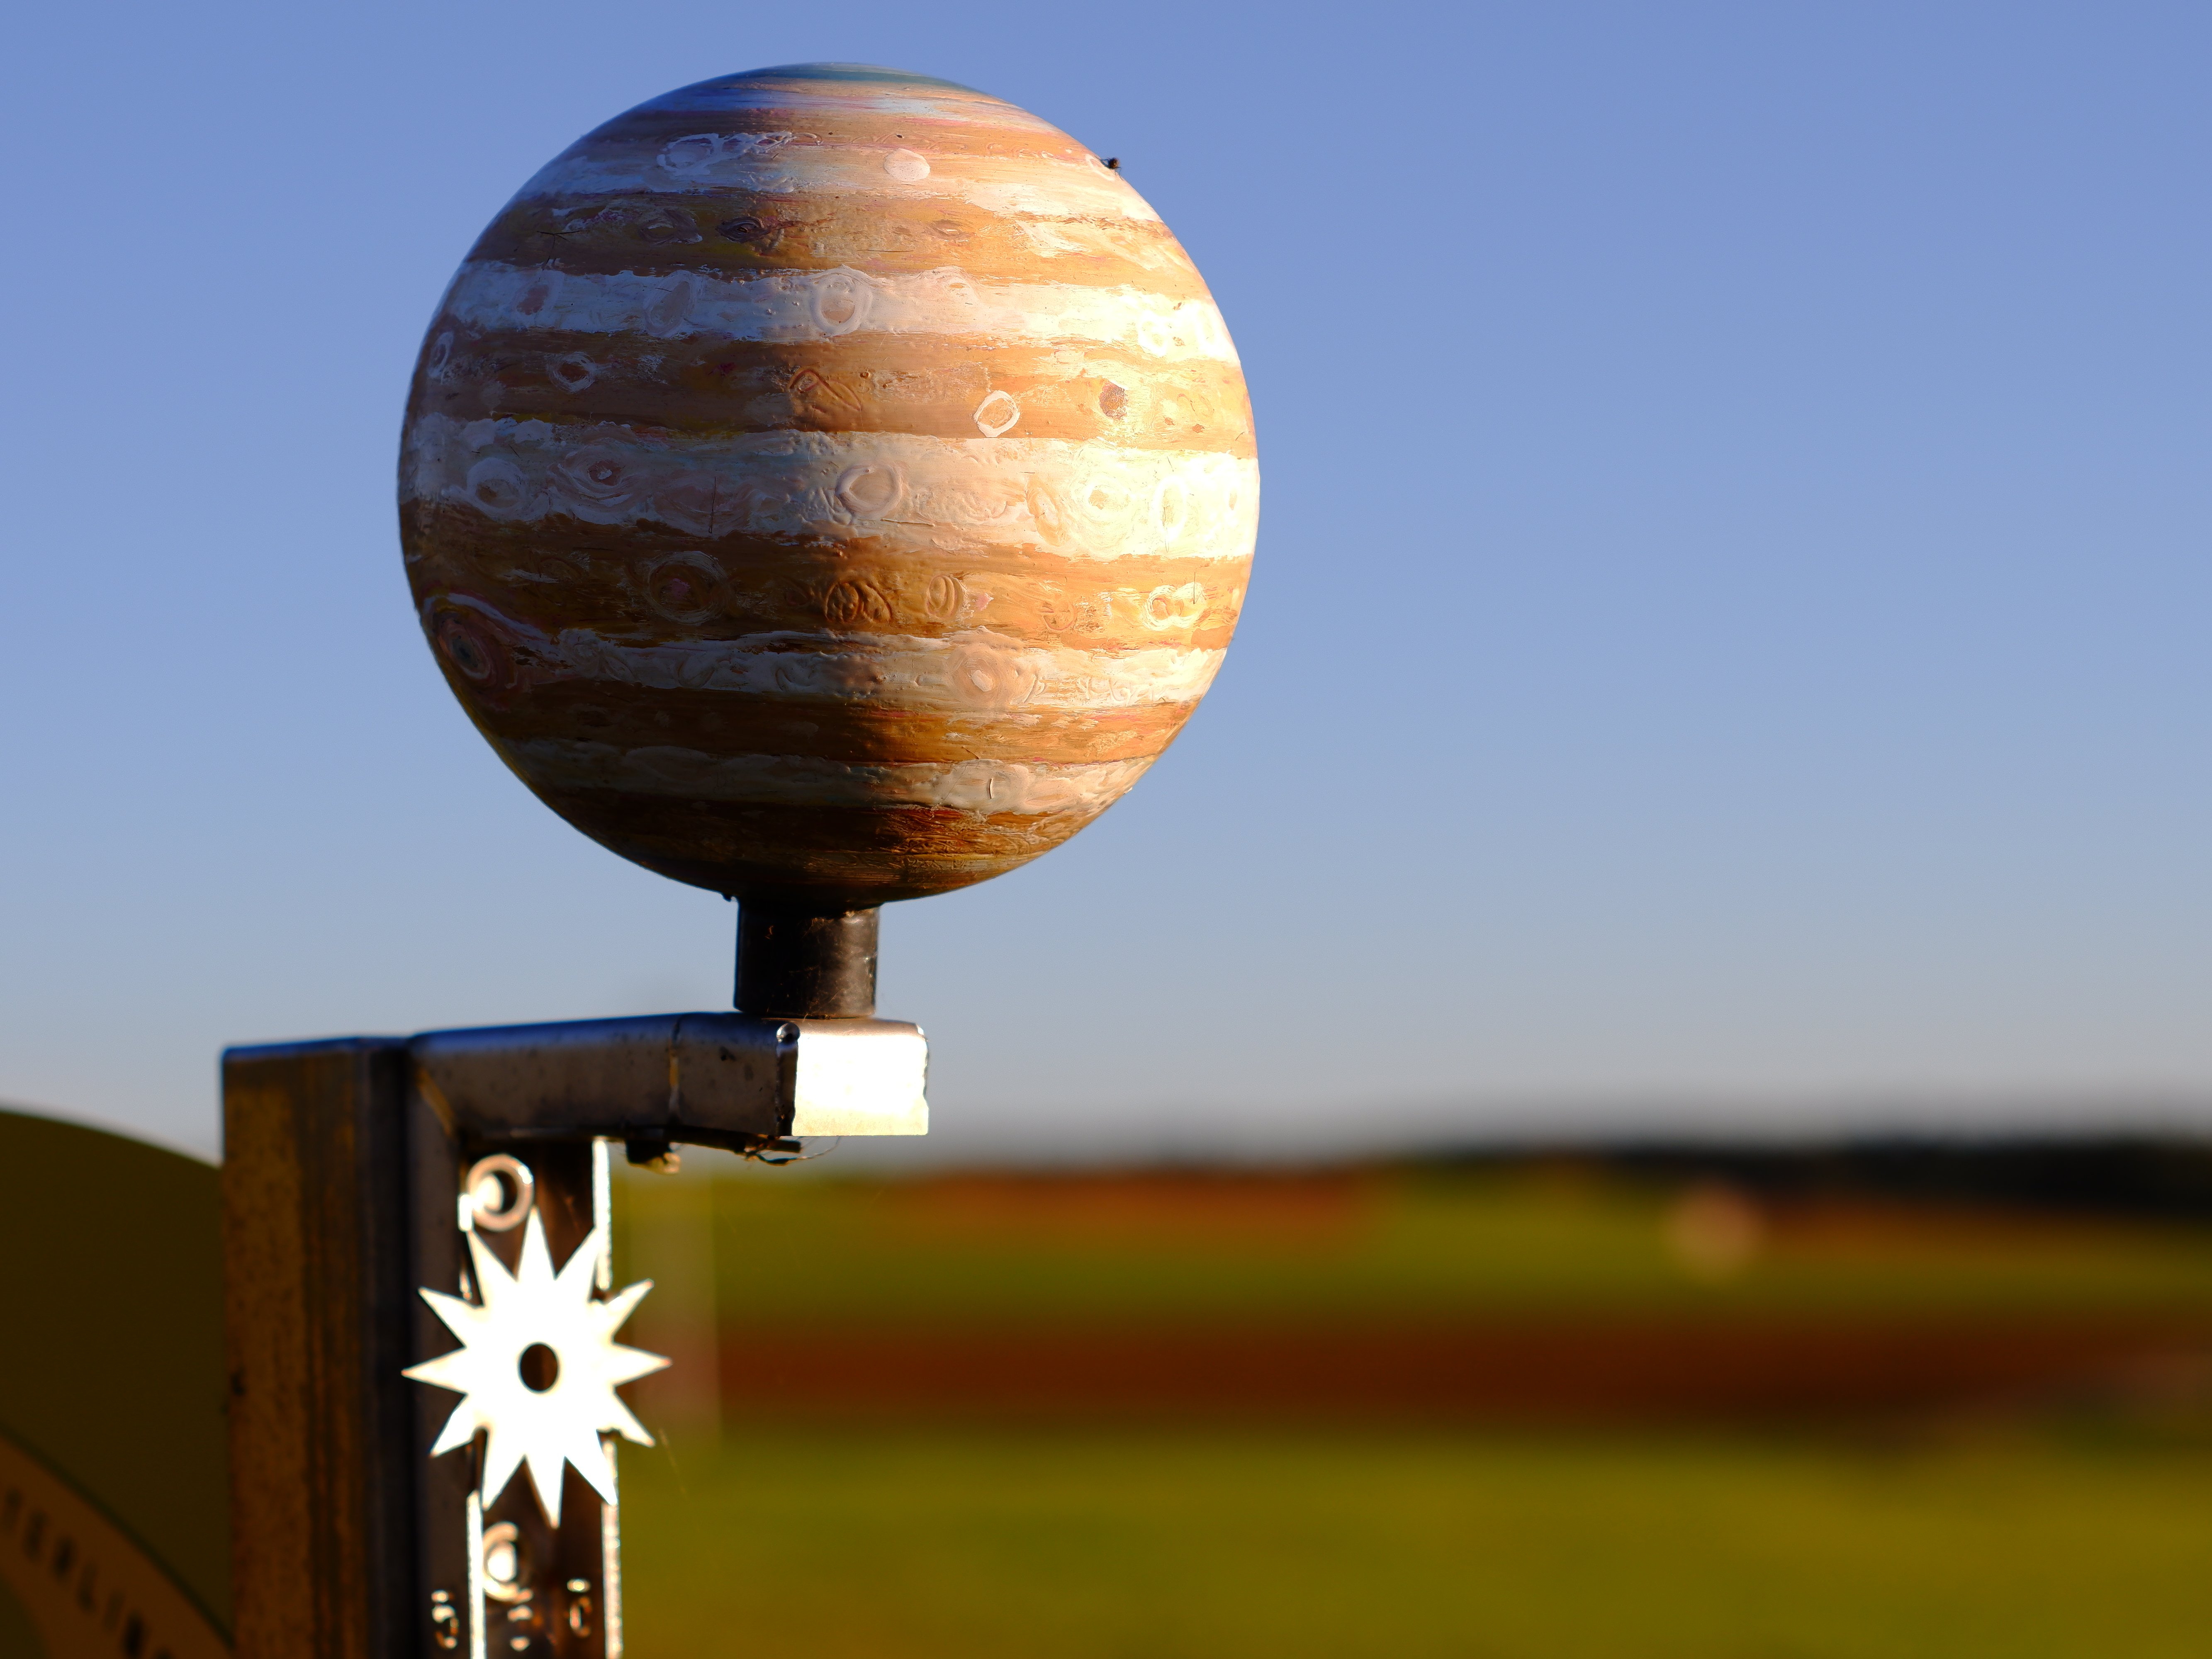 Auf dem Bild ist der Planet Jupiter in seiner hölzernen Farbe zu sehen. Im Hintergrund verschwommen der blaue Himmel und die grüne Wiese